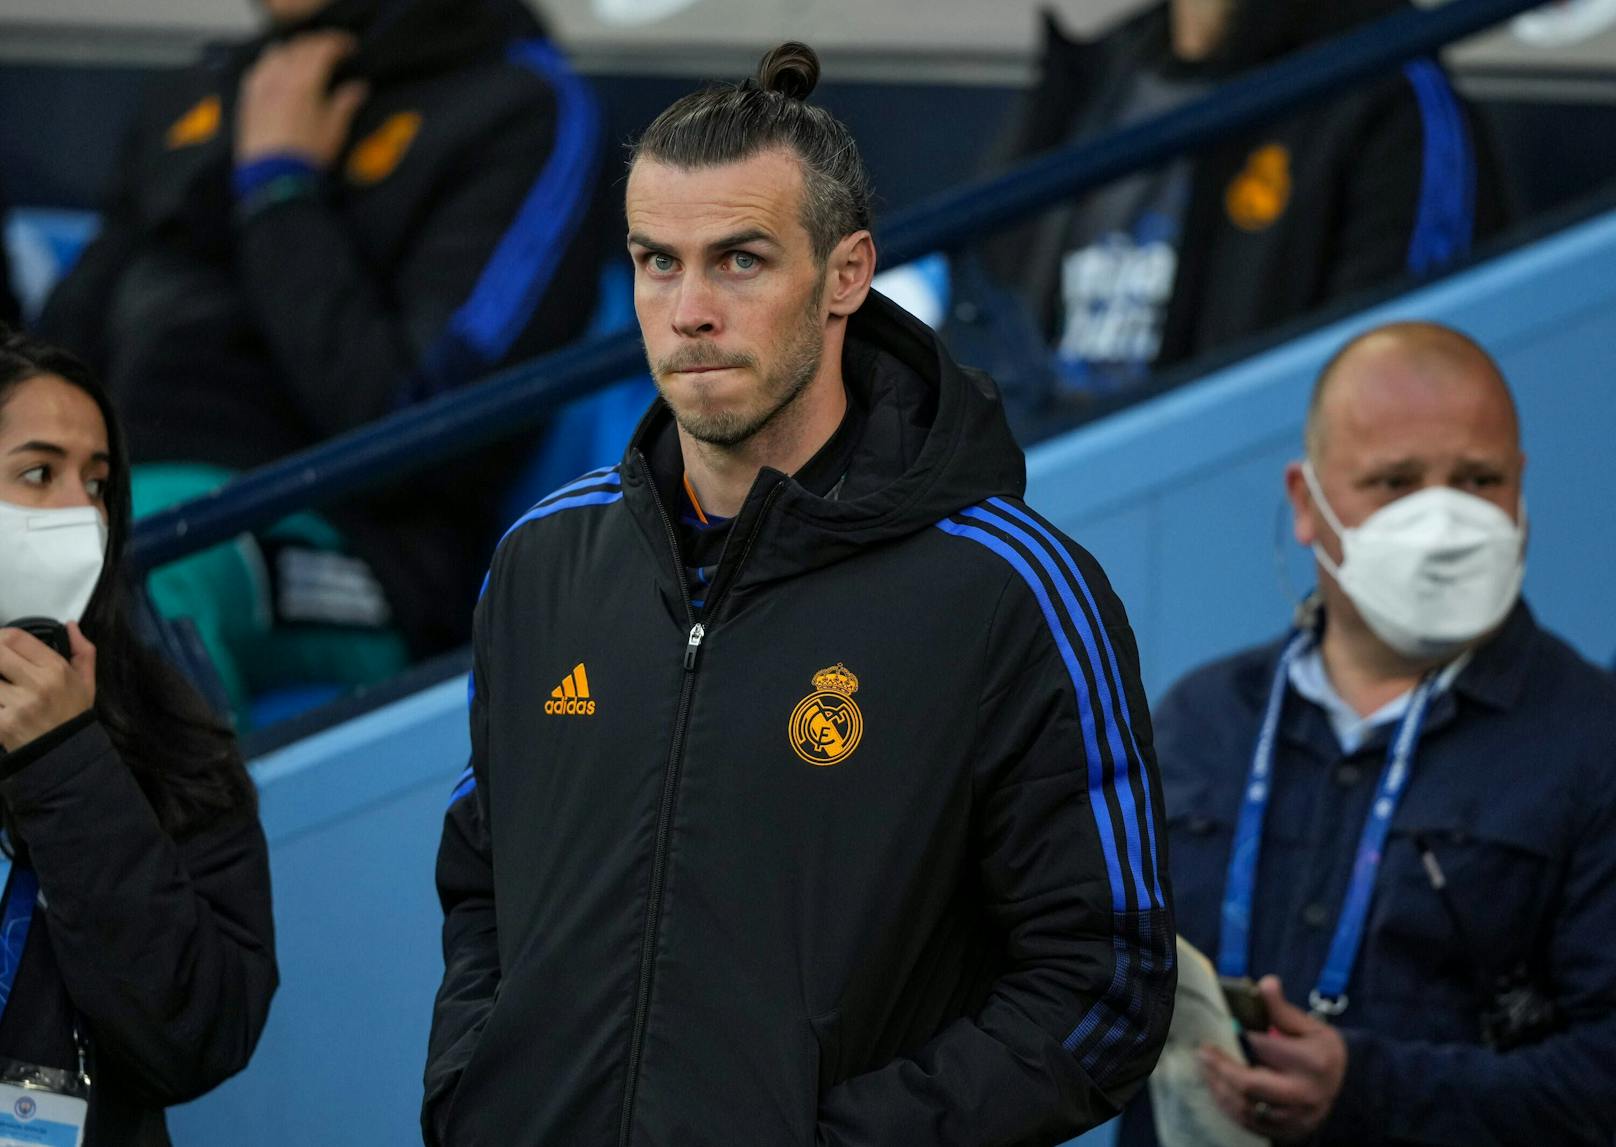 Verhängt Real Madrid noch Sanktionen gegen Gareth Bale? 